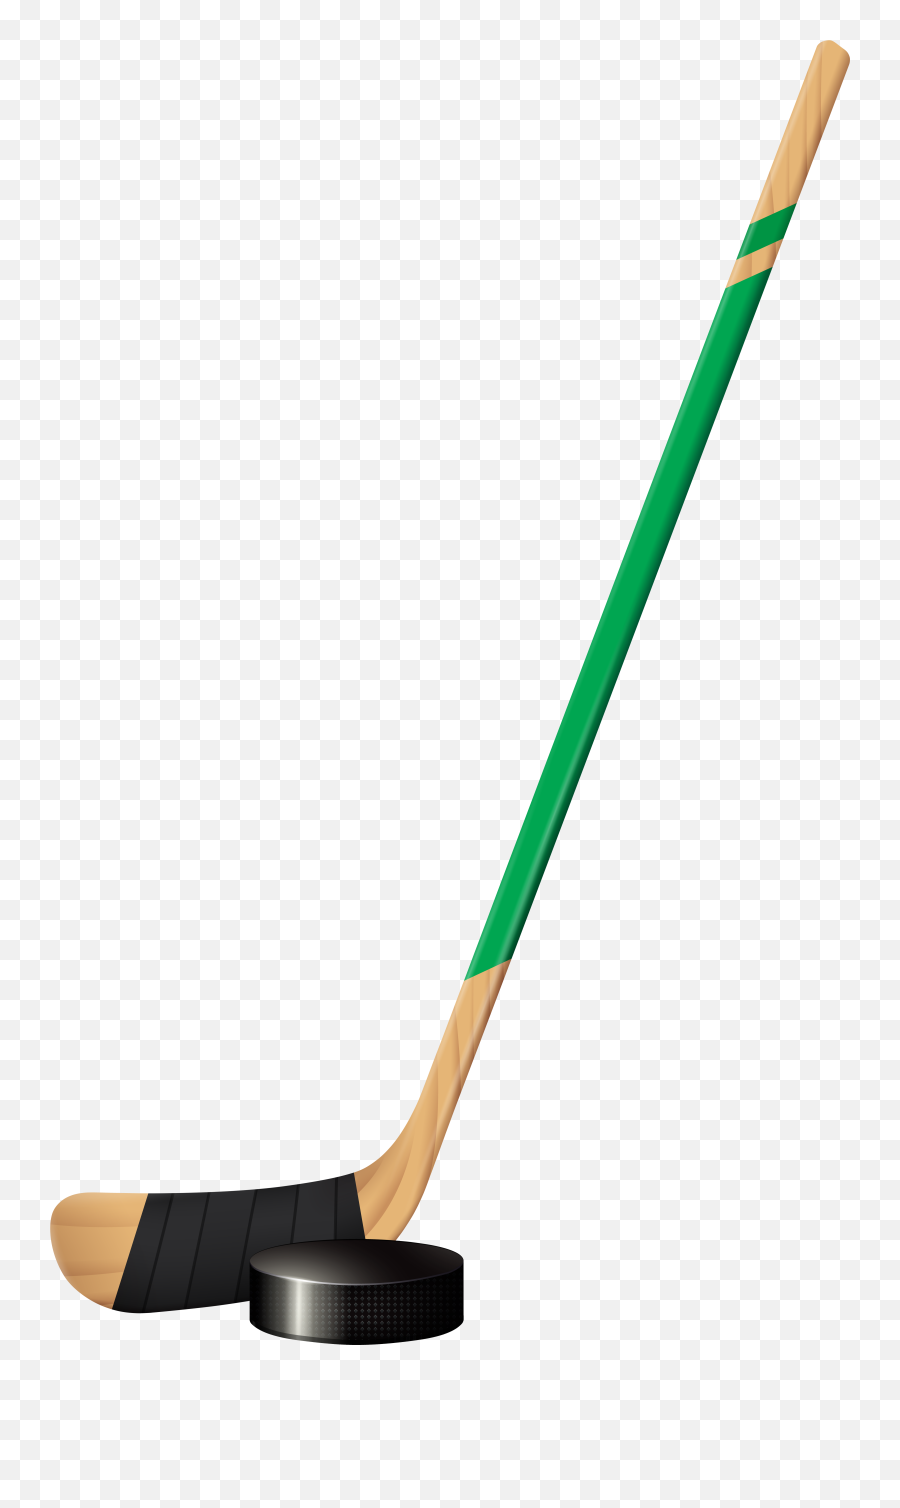 Hockey Stick And Puck Png U0026 Free Hockey Stick And Puckpng - Hockey Stick Emoji,Hockey Puck Emoji